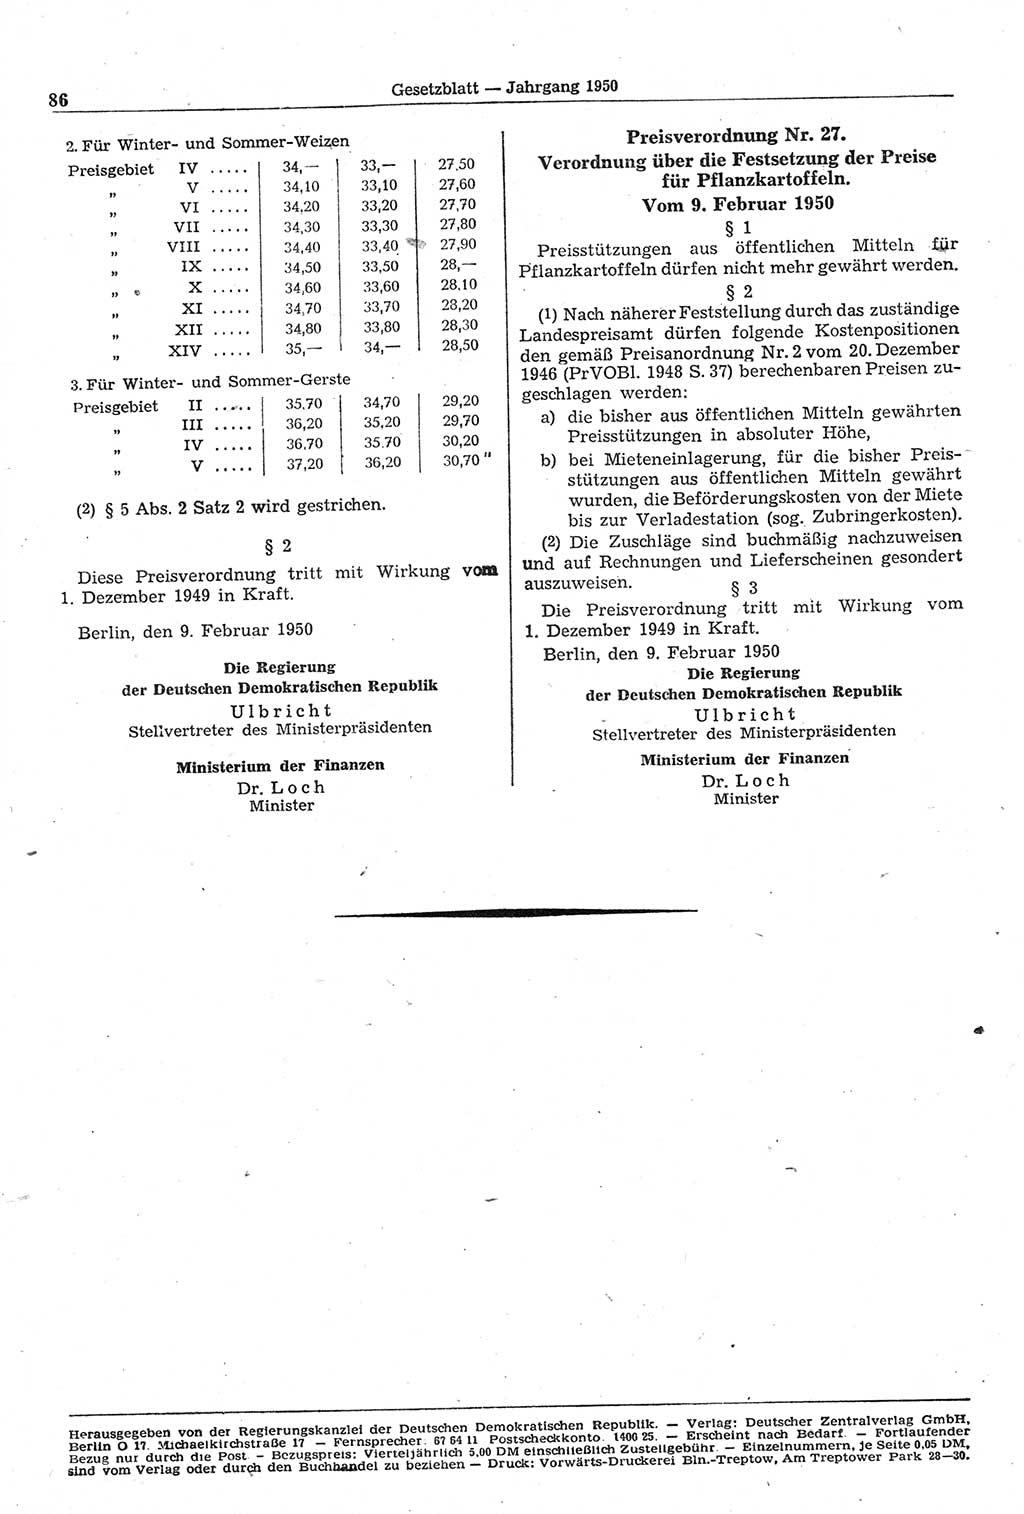 Gesetzblatt (GBl.) der Deutschen Demokratischen Republik (DDR) 1950, Seite 86 (GBl. DDR 1950, S. 86)